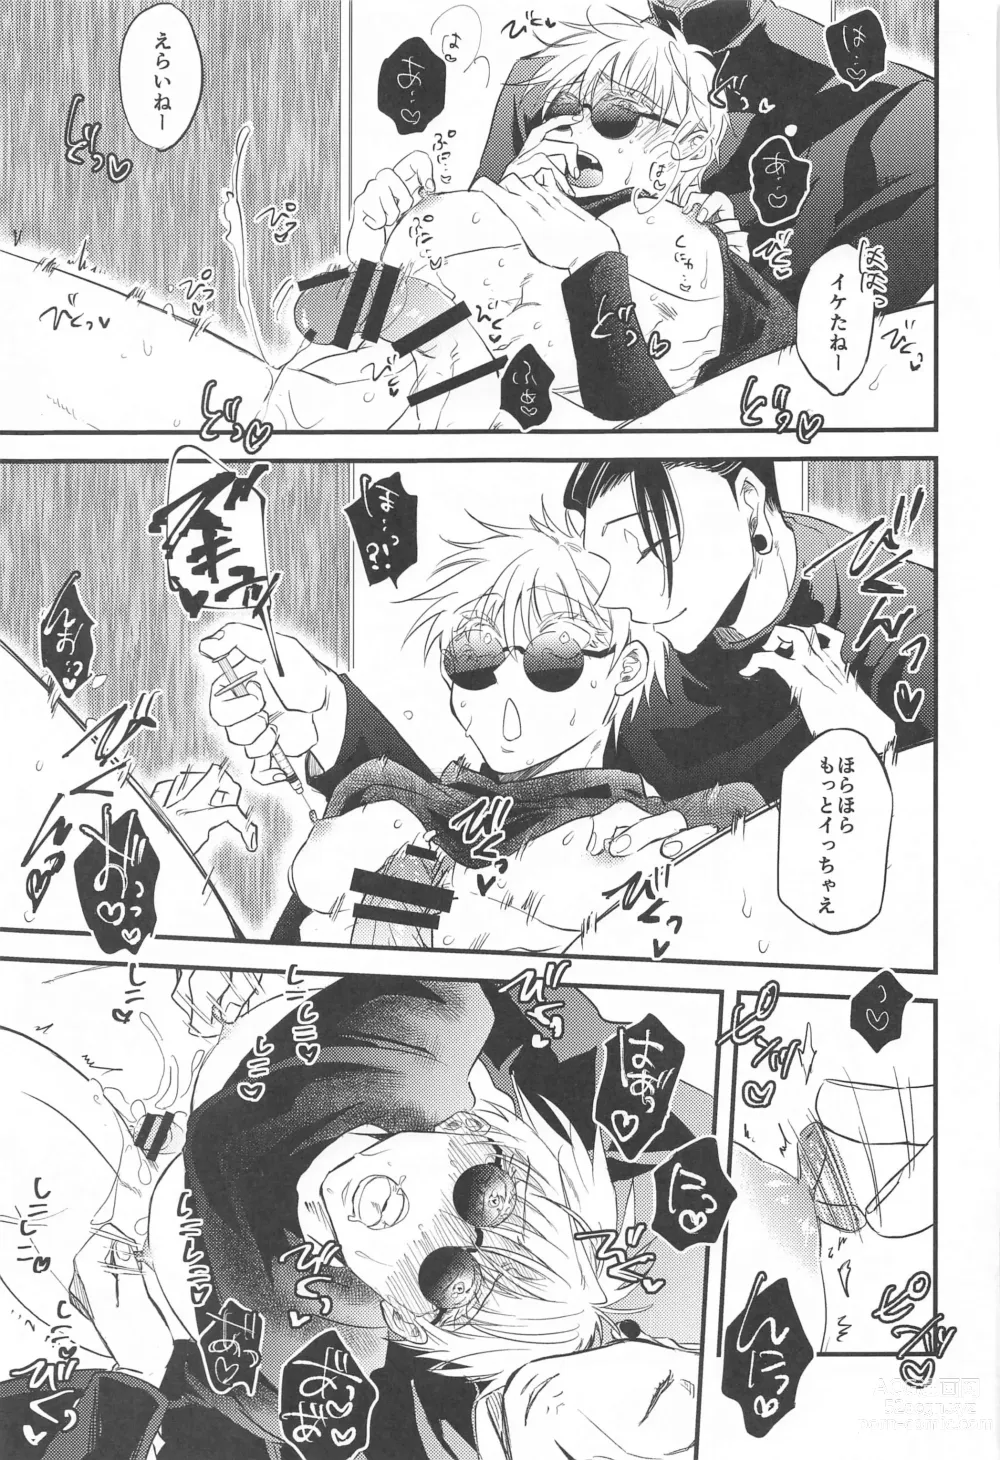 Page 18 of doujinshi Saikyou  x Kimeseku  x Sokuochi 2-koma